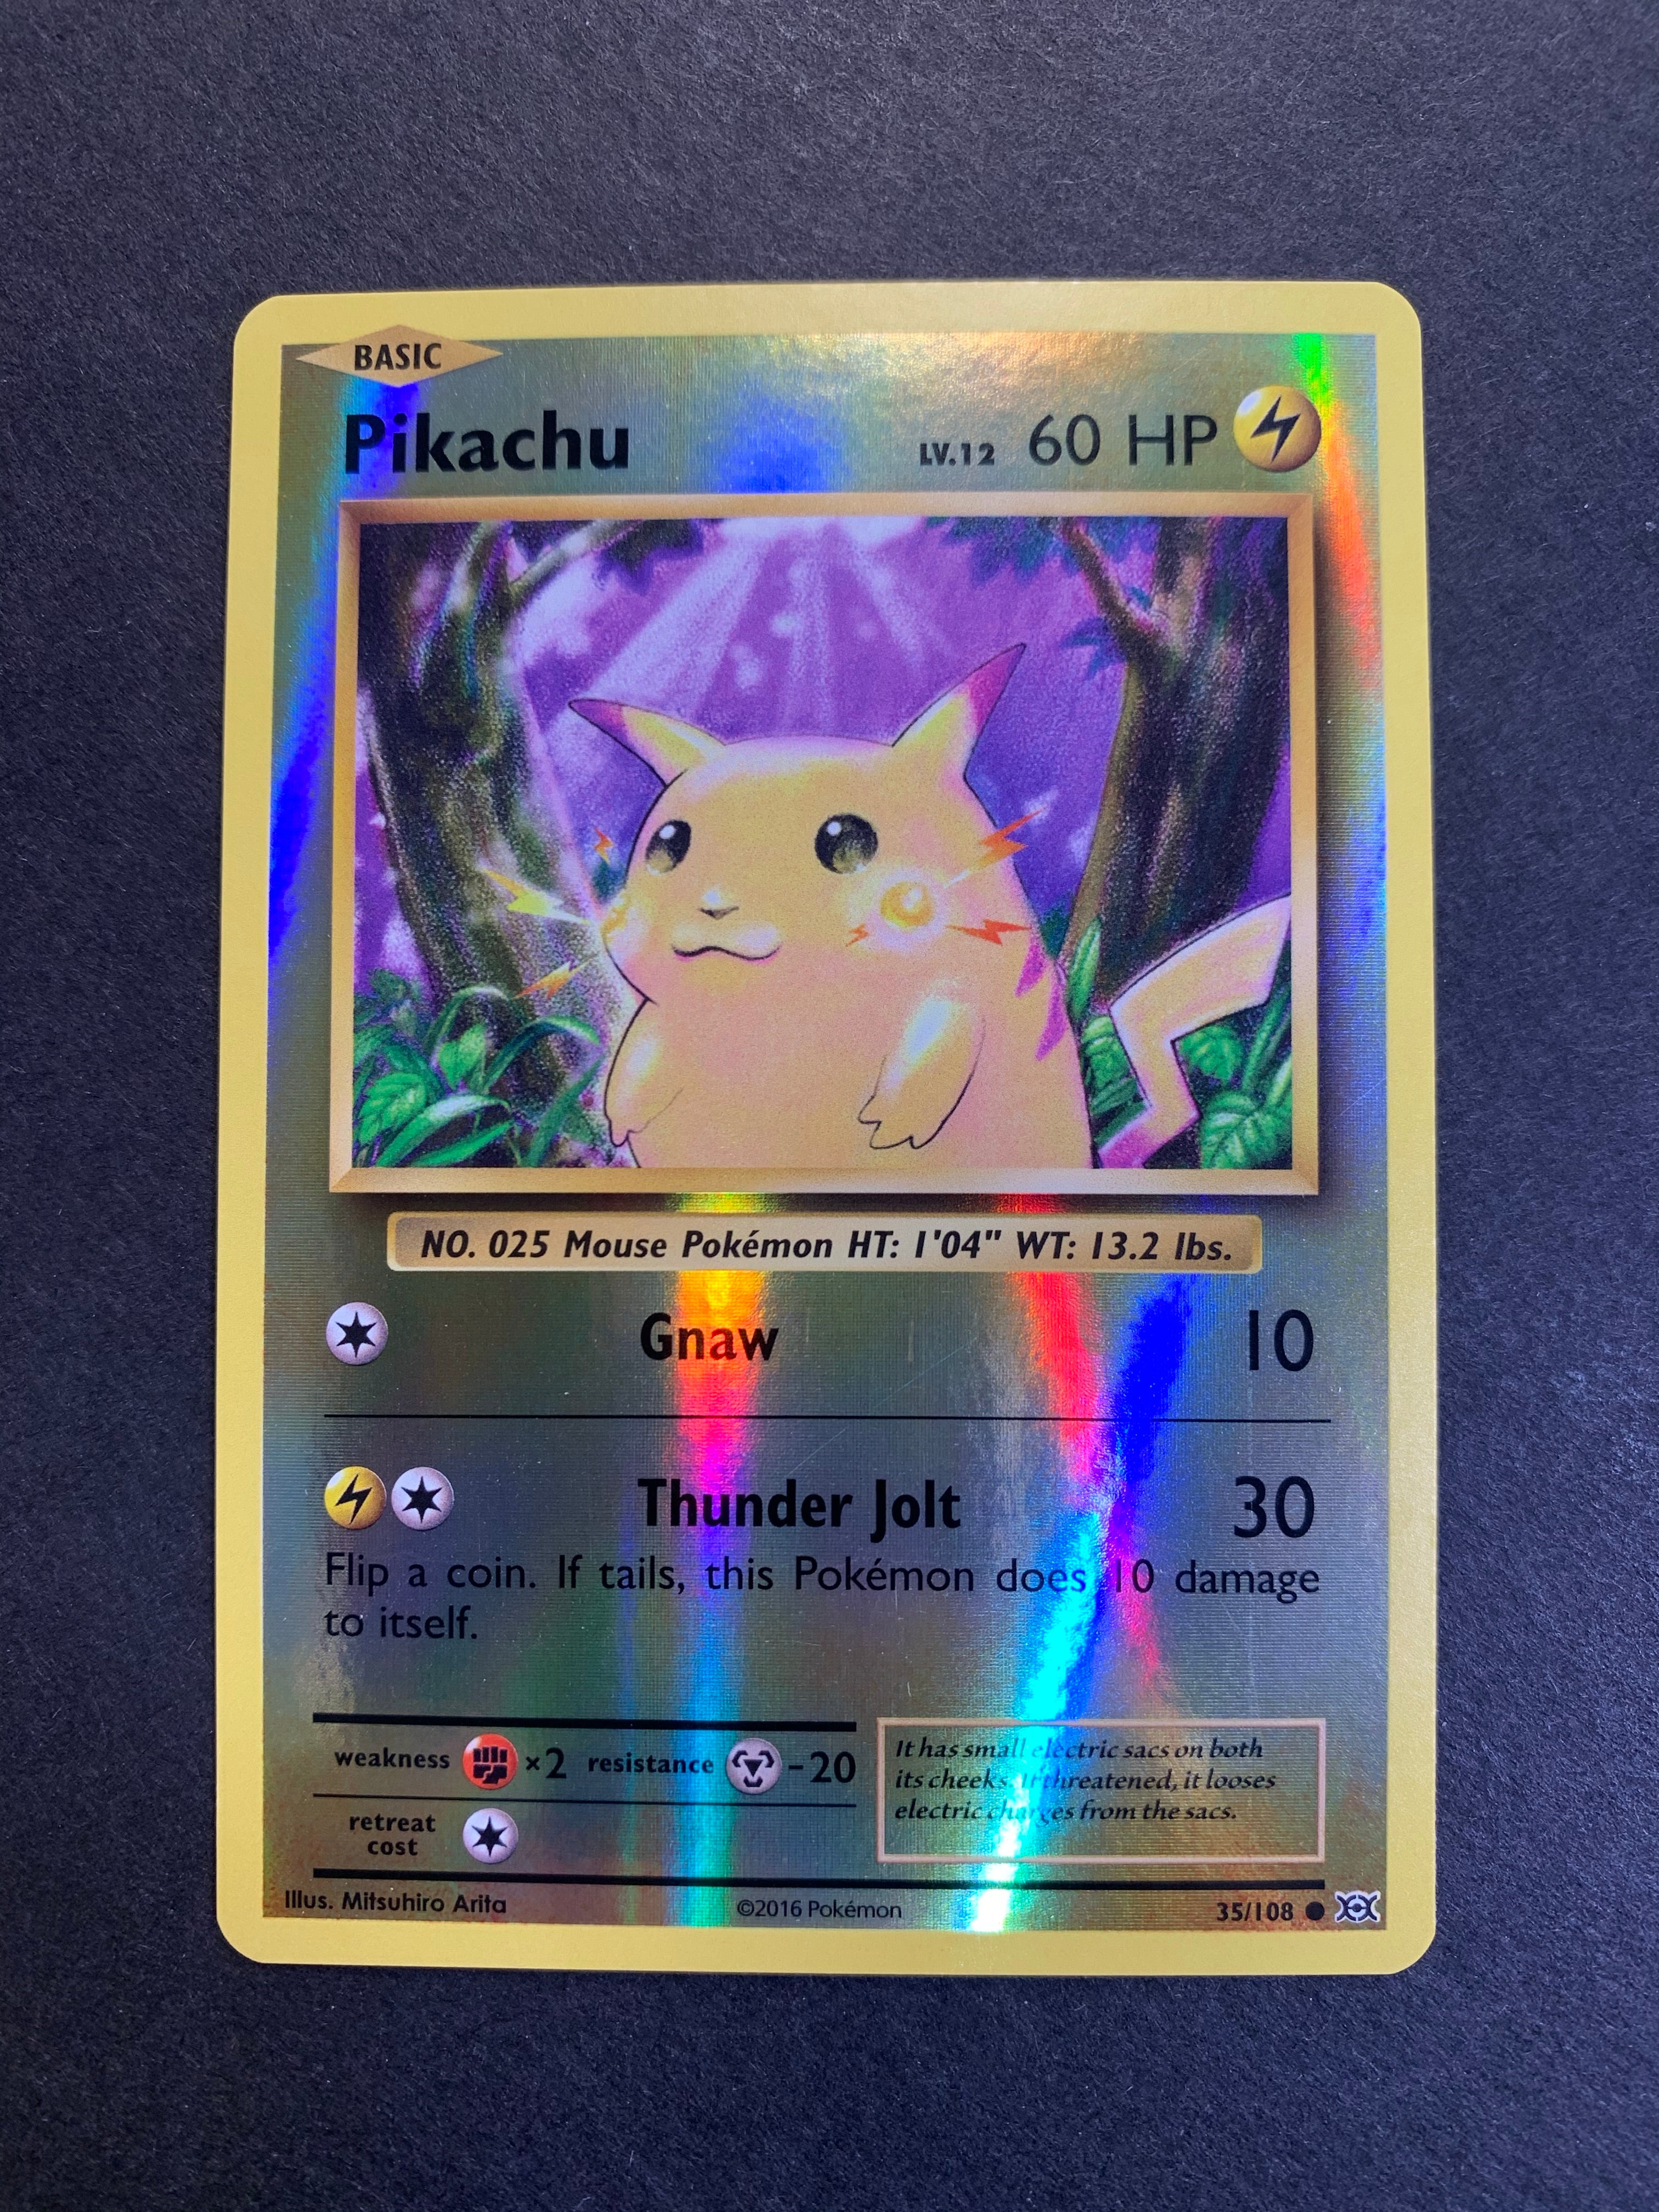 Rare Pikachu Basic Pokemon card 35/108 LV 12 60HP - 2016